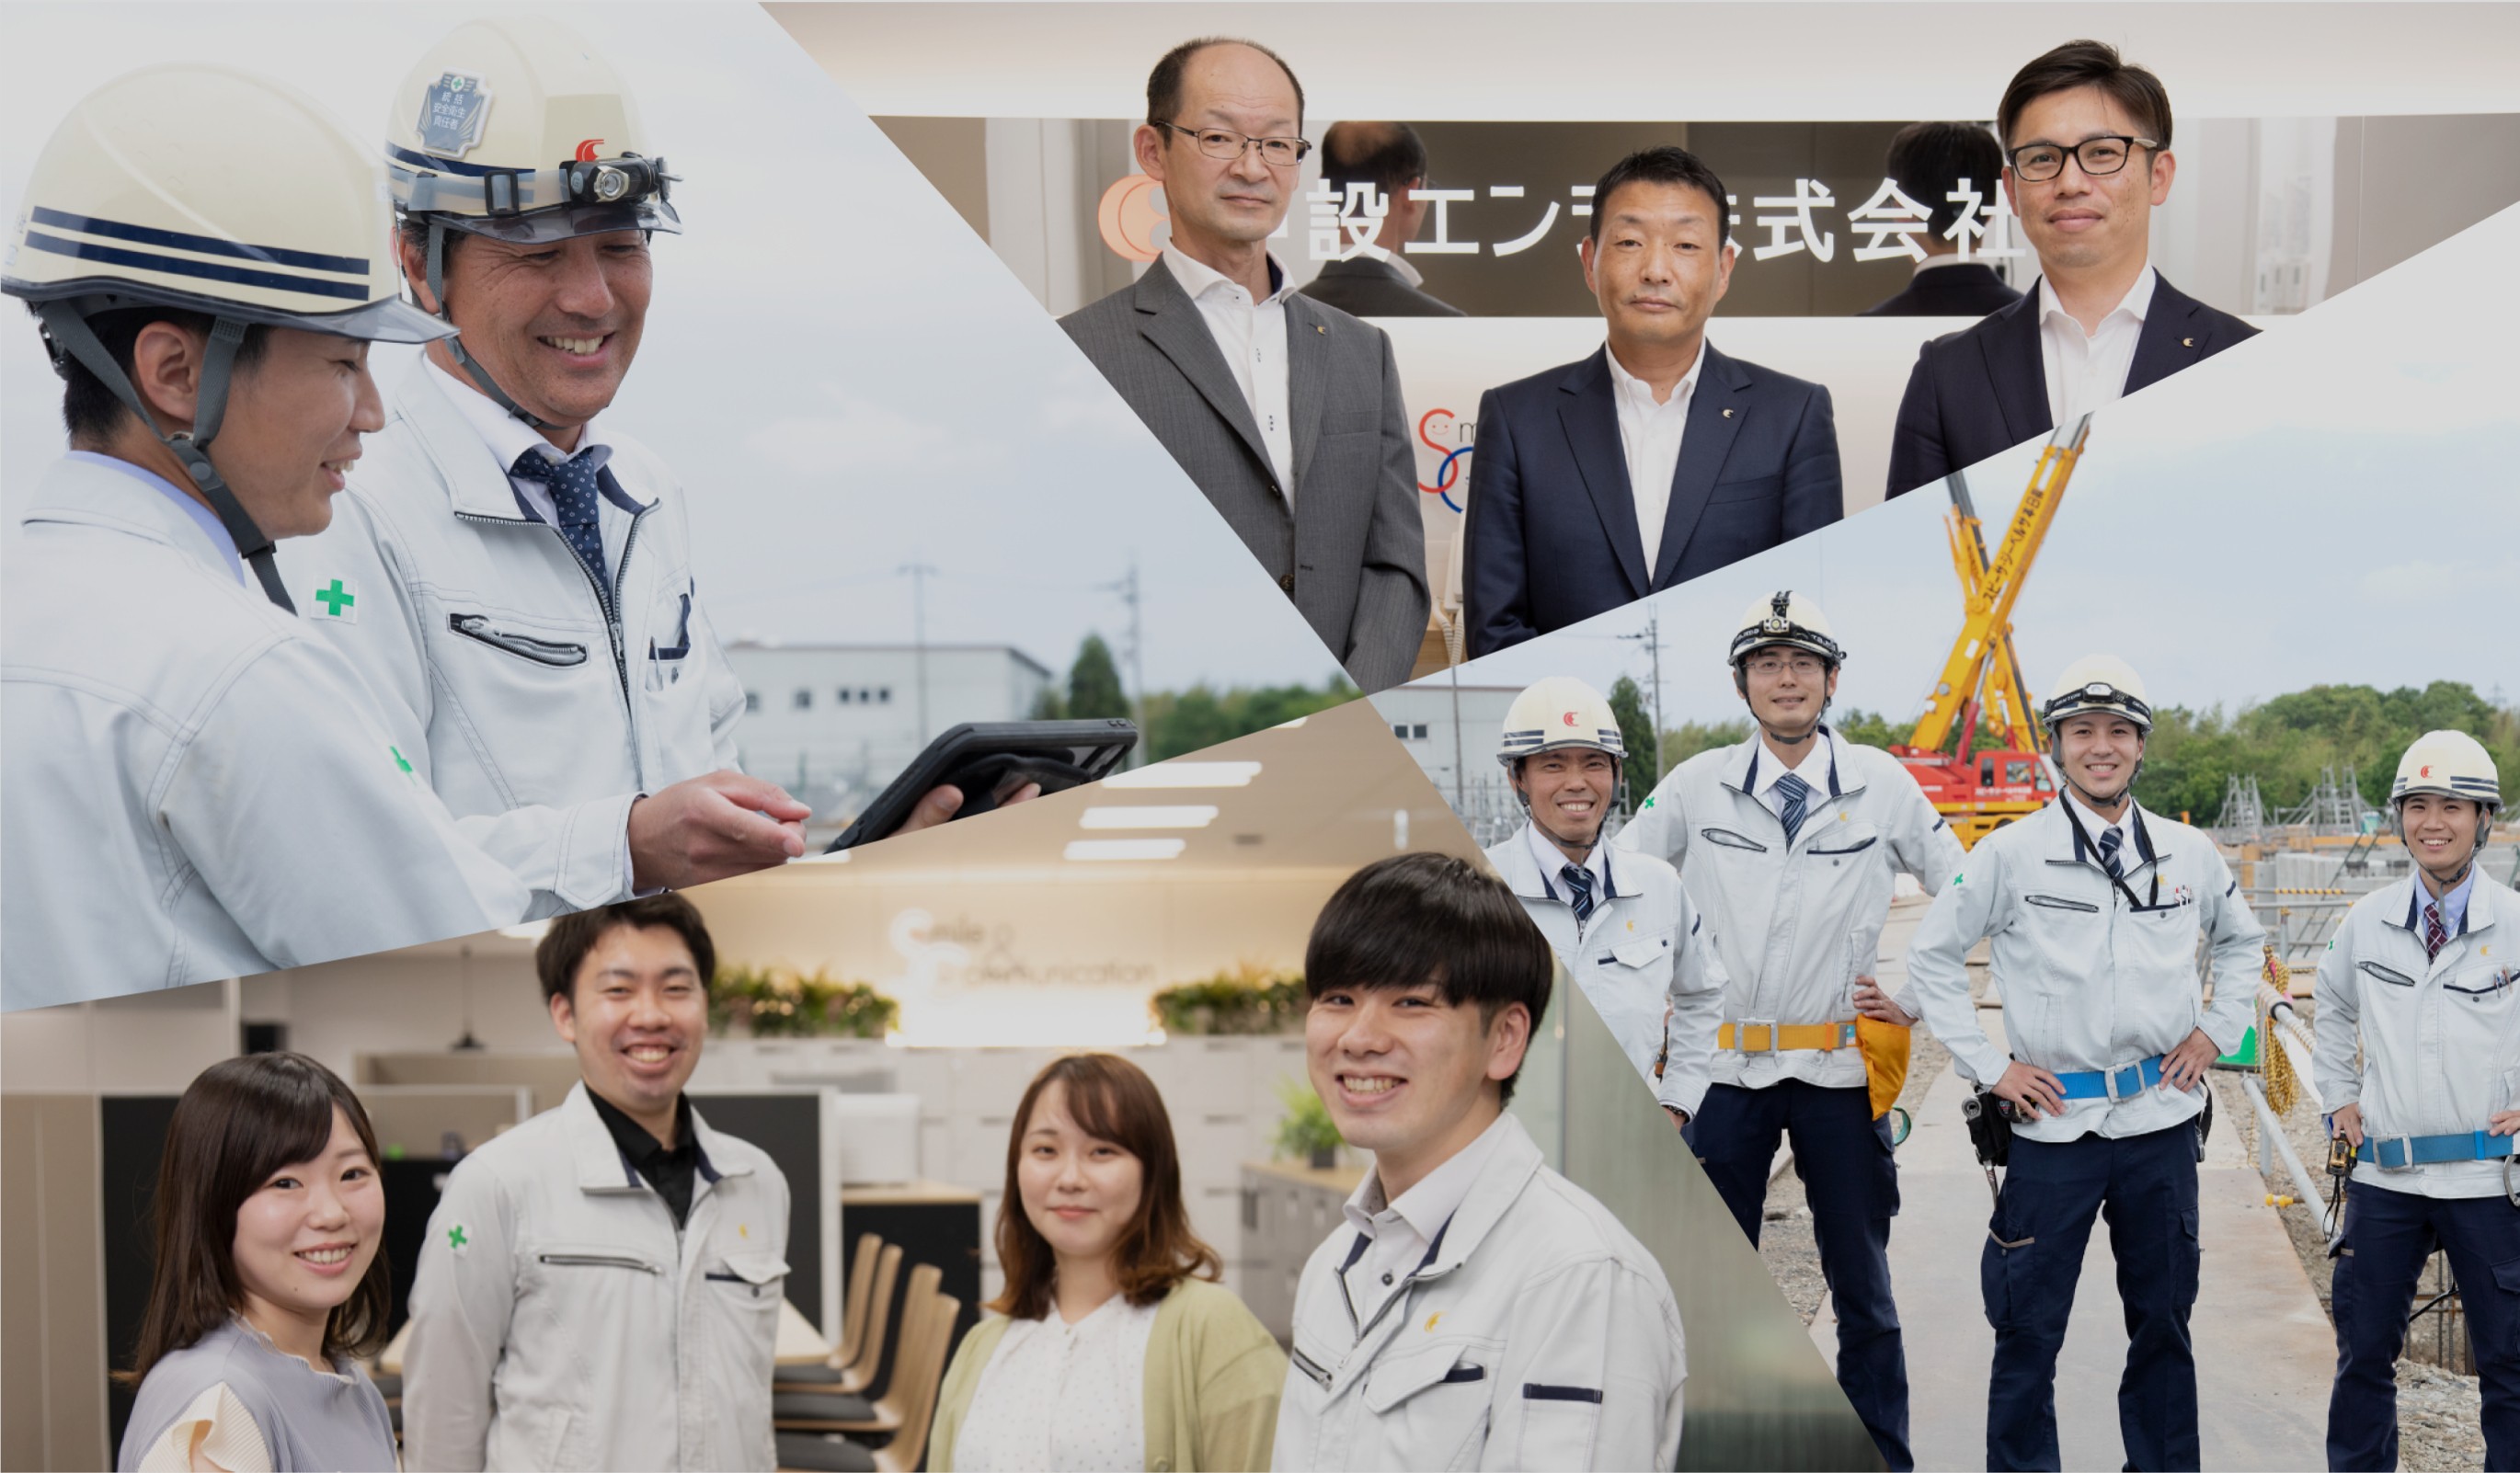 日本の「食」を支える食品工場をつくる会社。 イメージ